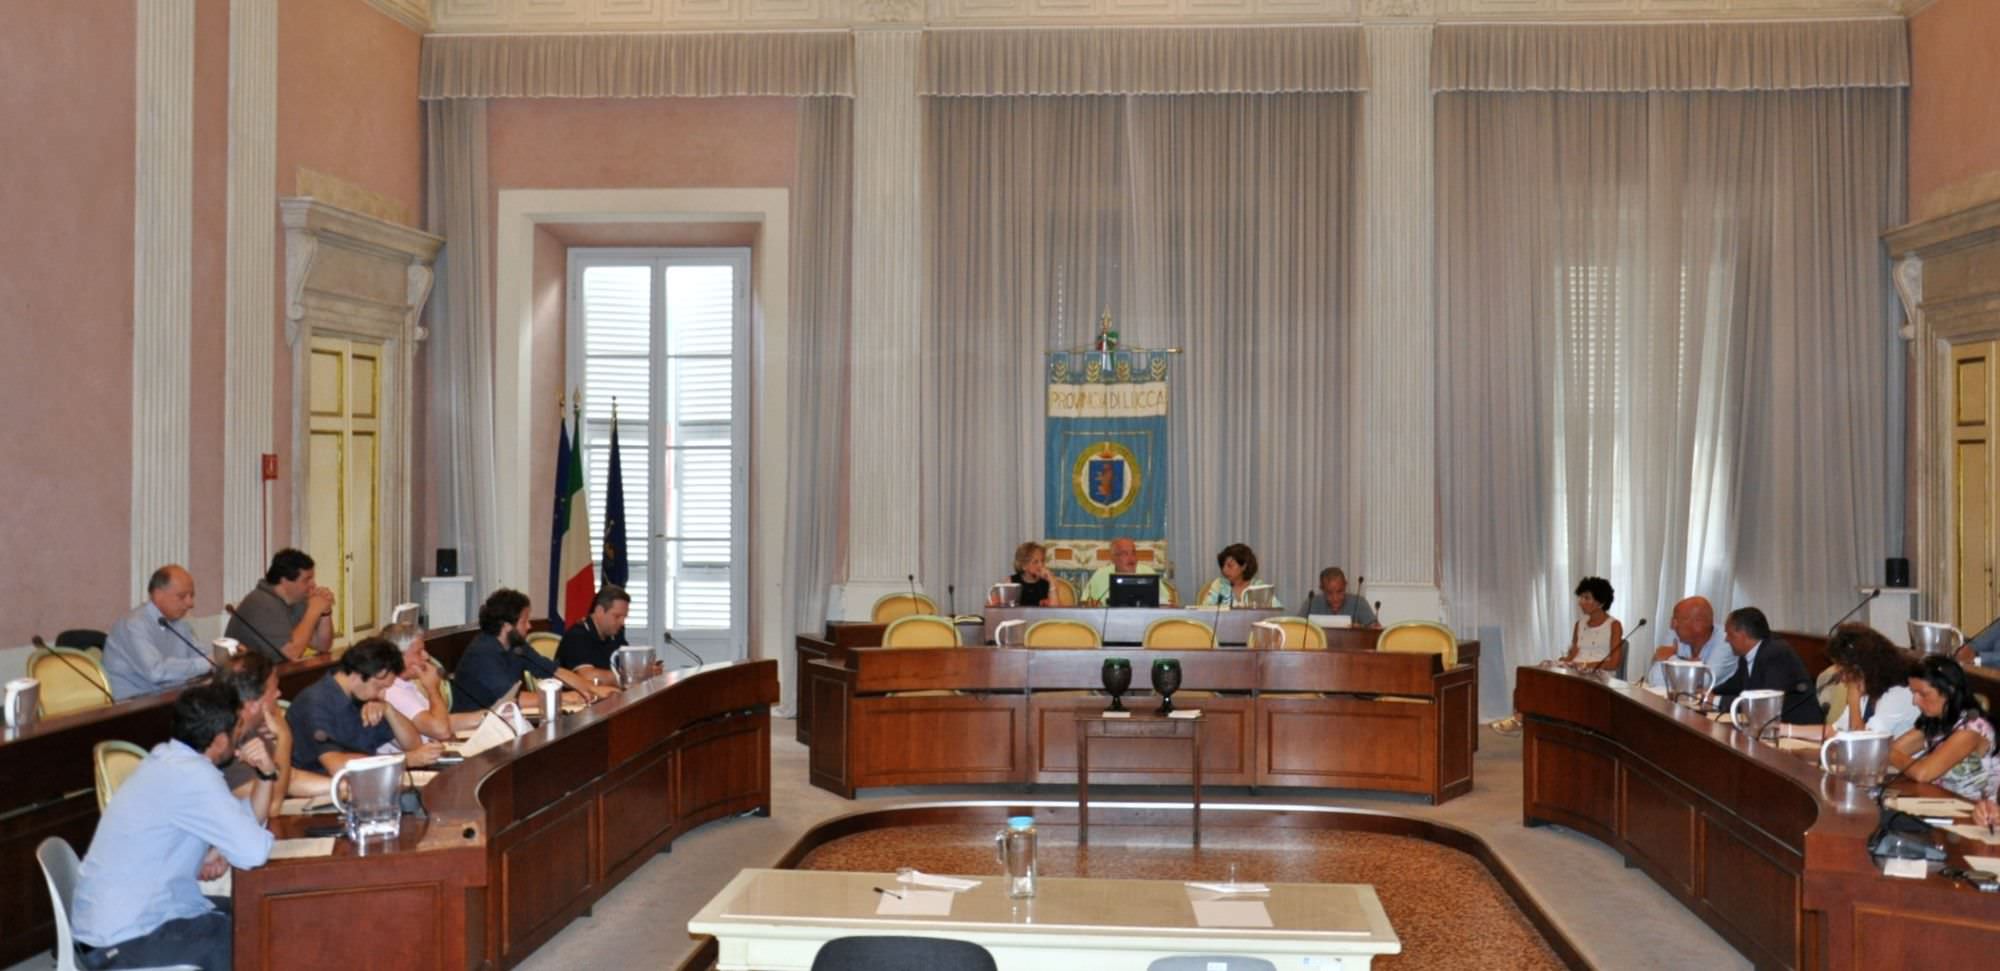 Consiglio provinciale, convocata la seduta per il nuovo statuto